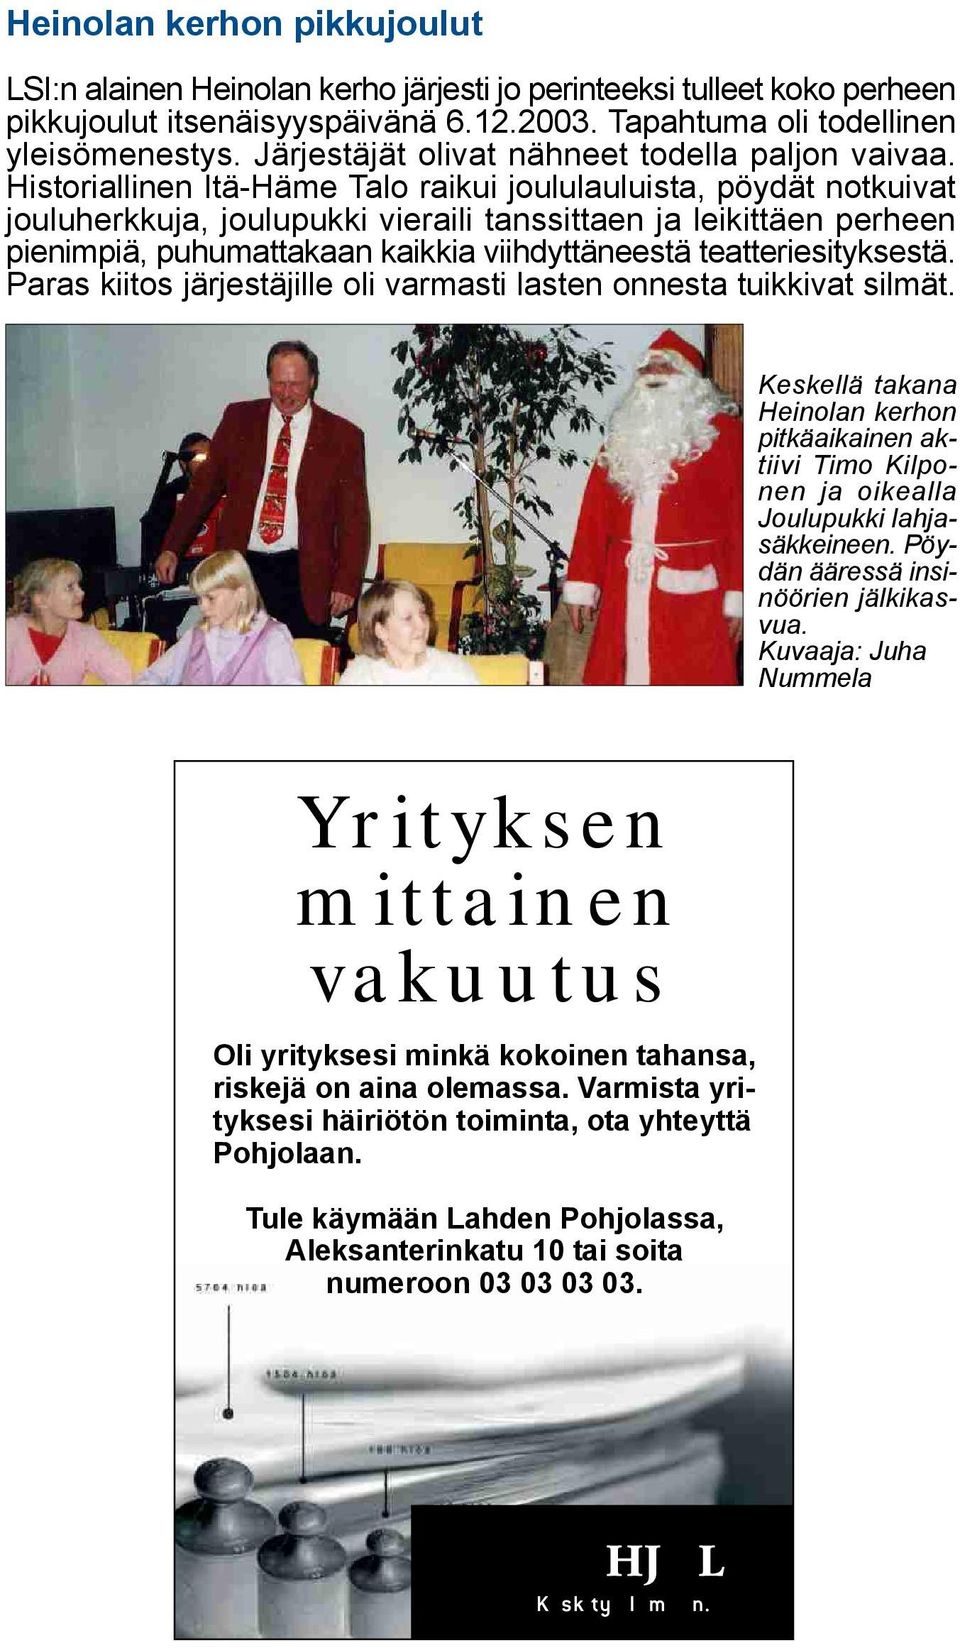 Historiallinen Itä-Häme Talo raikui joululauluista, pöydät notkuivat jouluherkkuja, joulupukki vieraili tanssittaen ja leikittäen perheen pienimpiä, puhumattakaan kaikkia viihdyttäneestä